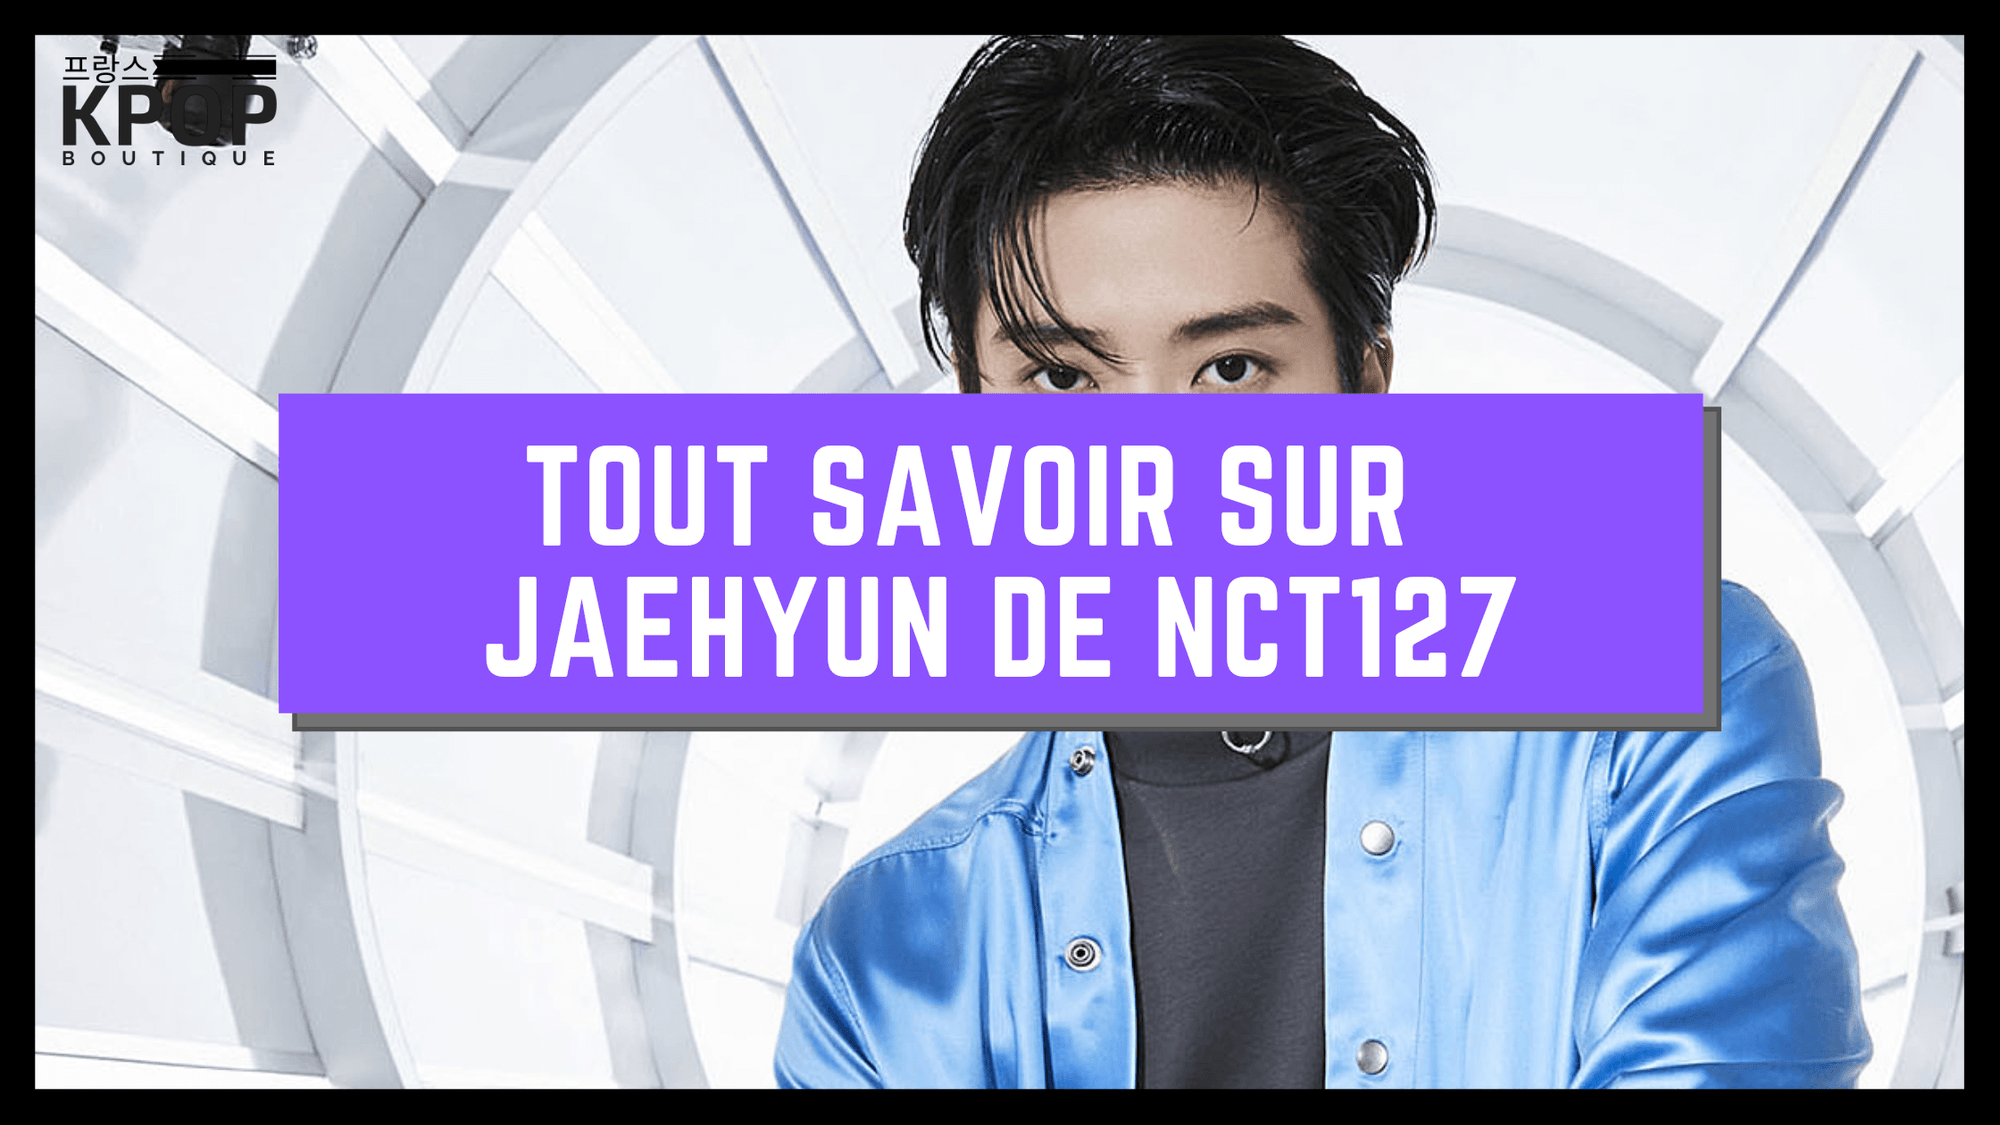  Jaehyun des NCT K-POP